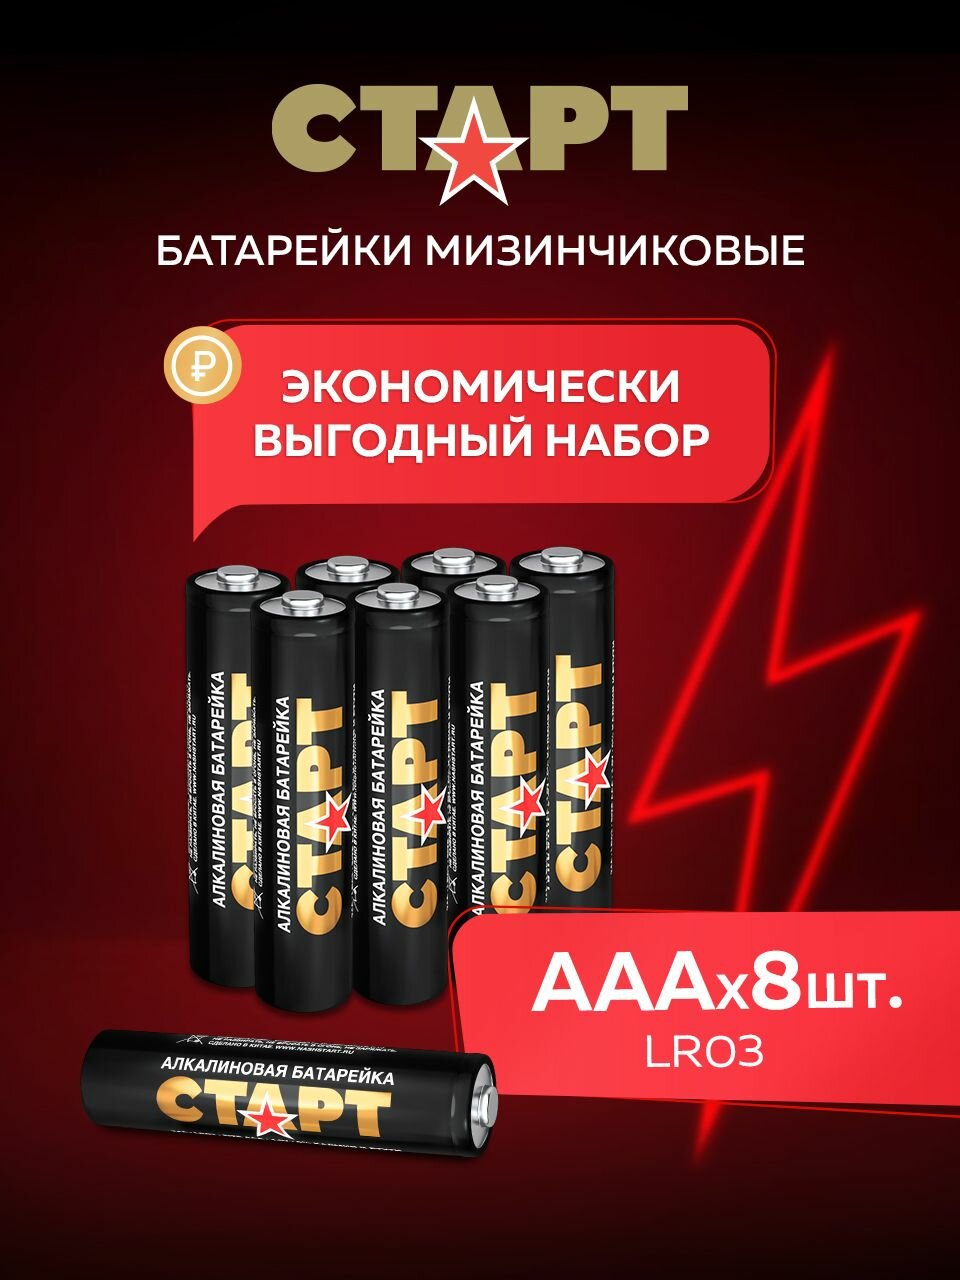 Батарейки ААА старт 8штук, мизинчиковые1,5v алкалиновые